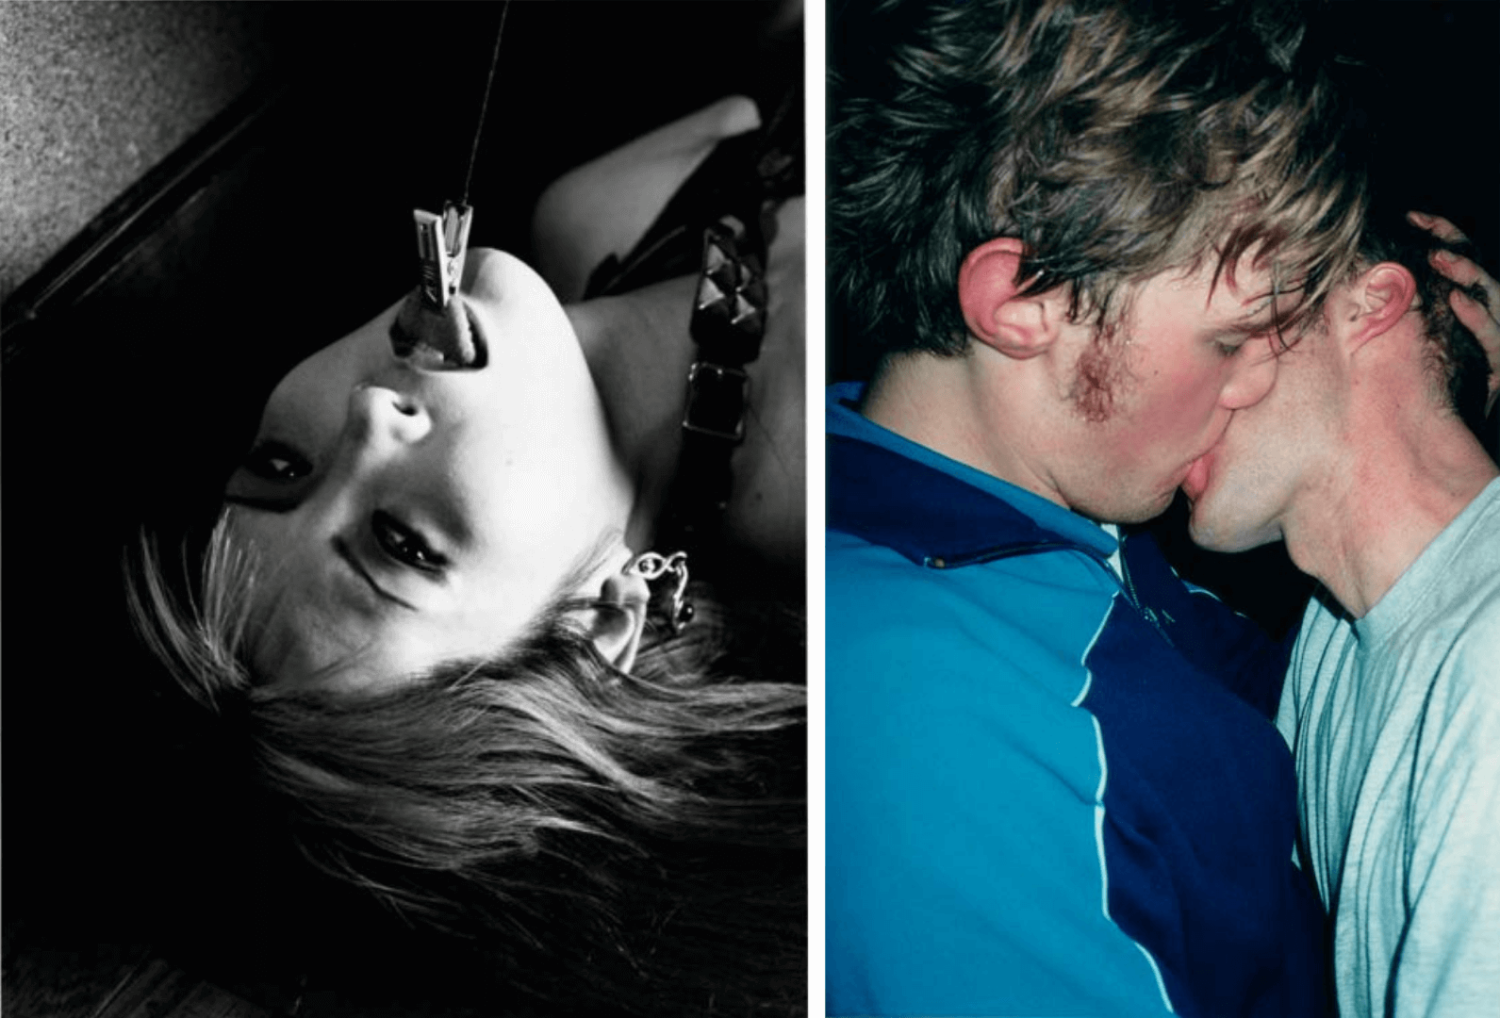 Zwei Fotografien: links eine Schwarz-Weiß-Fotografie von Araki mit einer Frau, die eine Klammer an der Zunge hat und links ein Foto von Wolfgang Tillmans, wo sich zwei Männer küssen